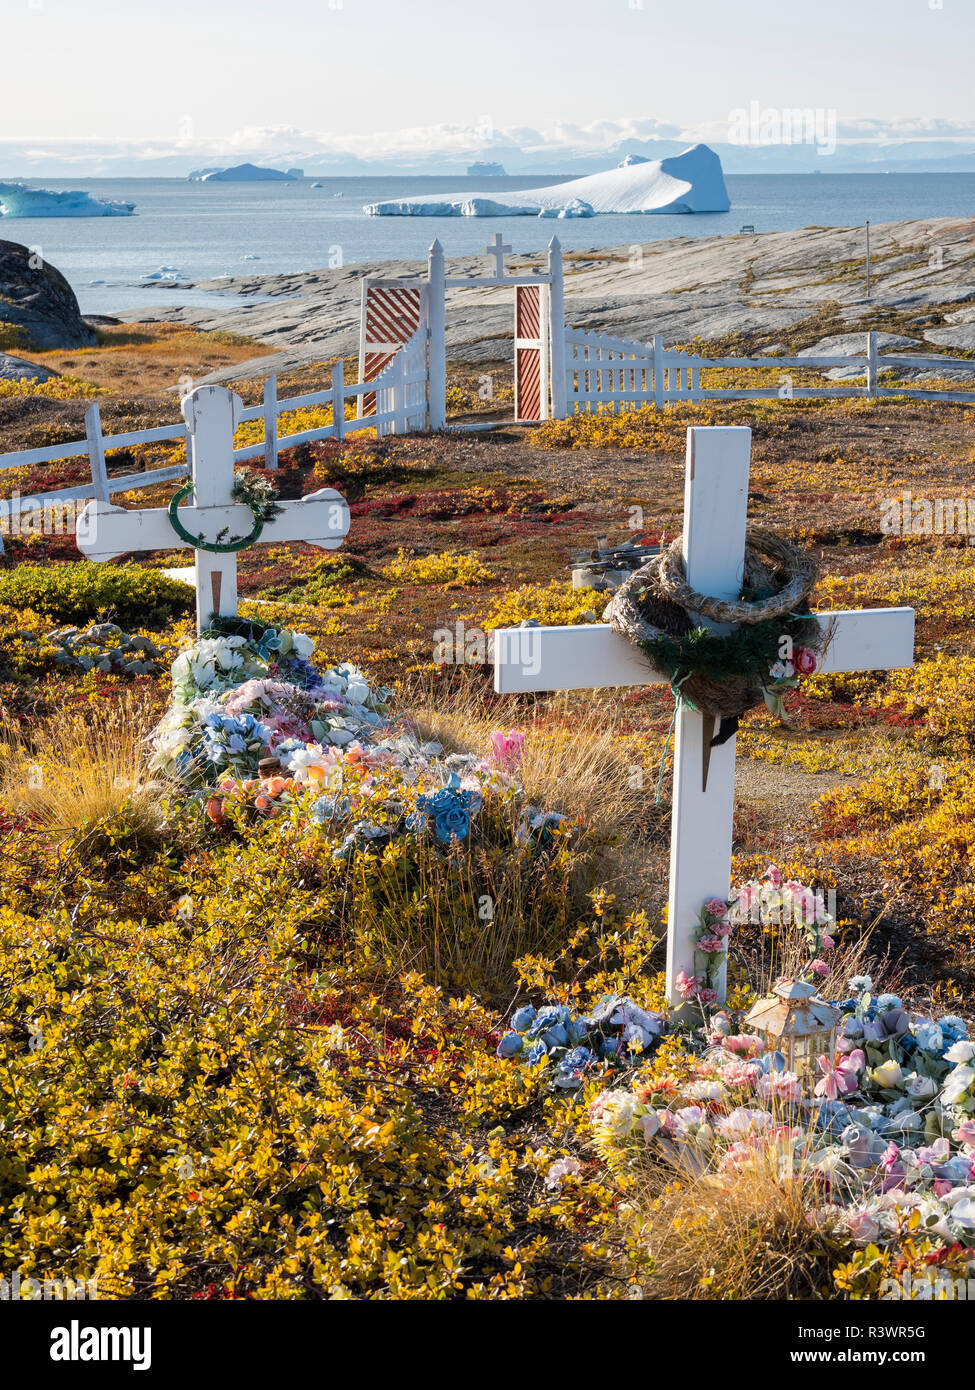 Au cimetière des Inuits Oqaatsut village (autrefois appelé Rodebay) situé dans la baie de Disko. Le Groenland, Danemark Banque D'Images